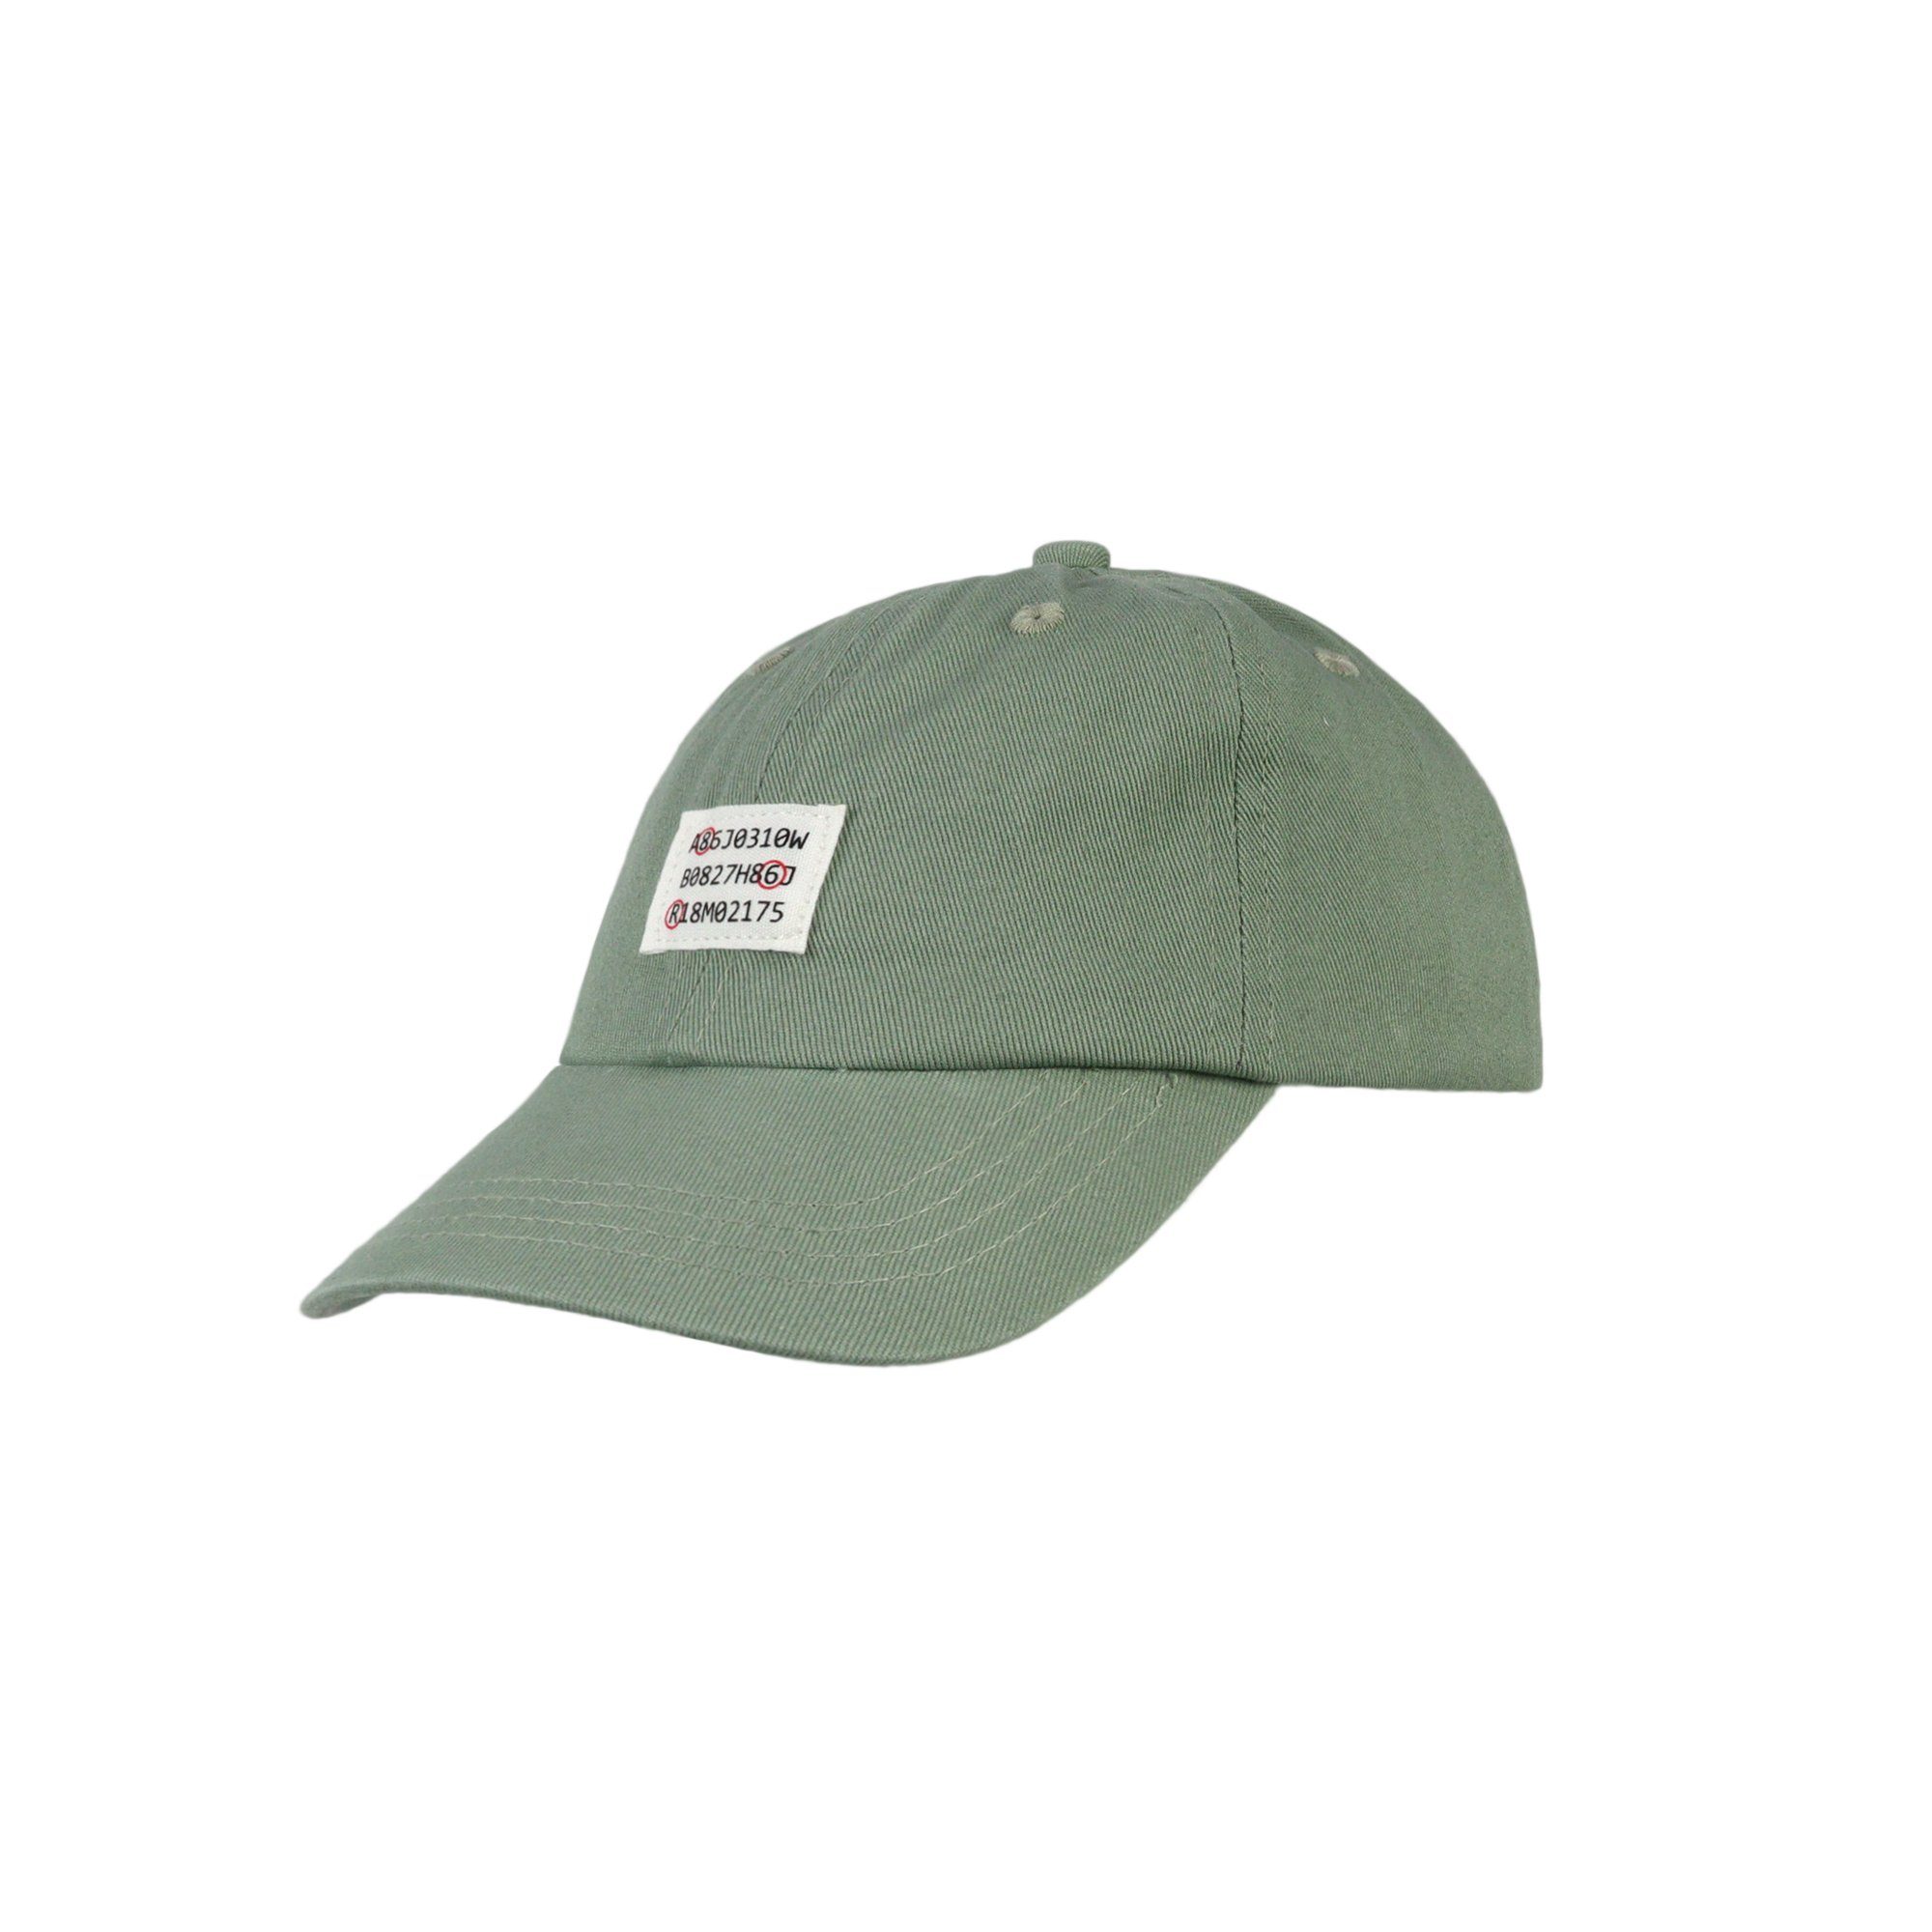 ZEBRO Baseball Cap Cap mint